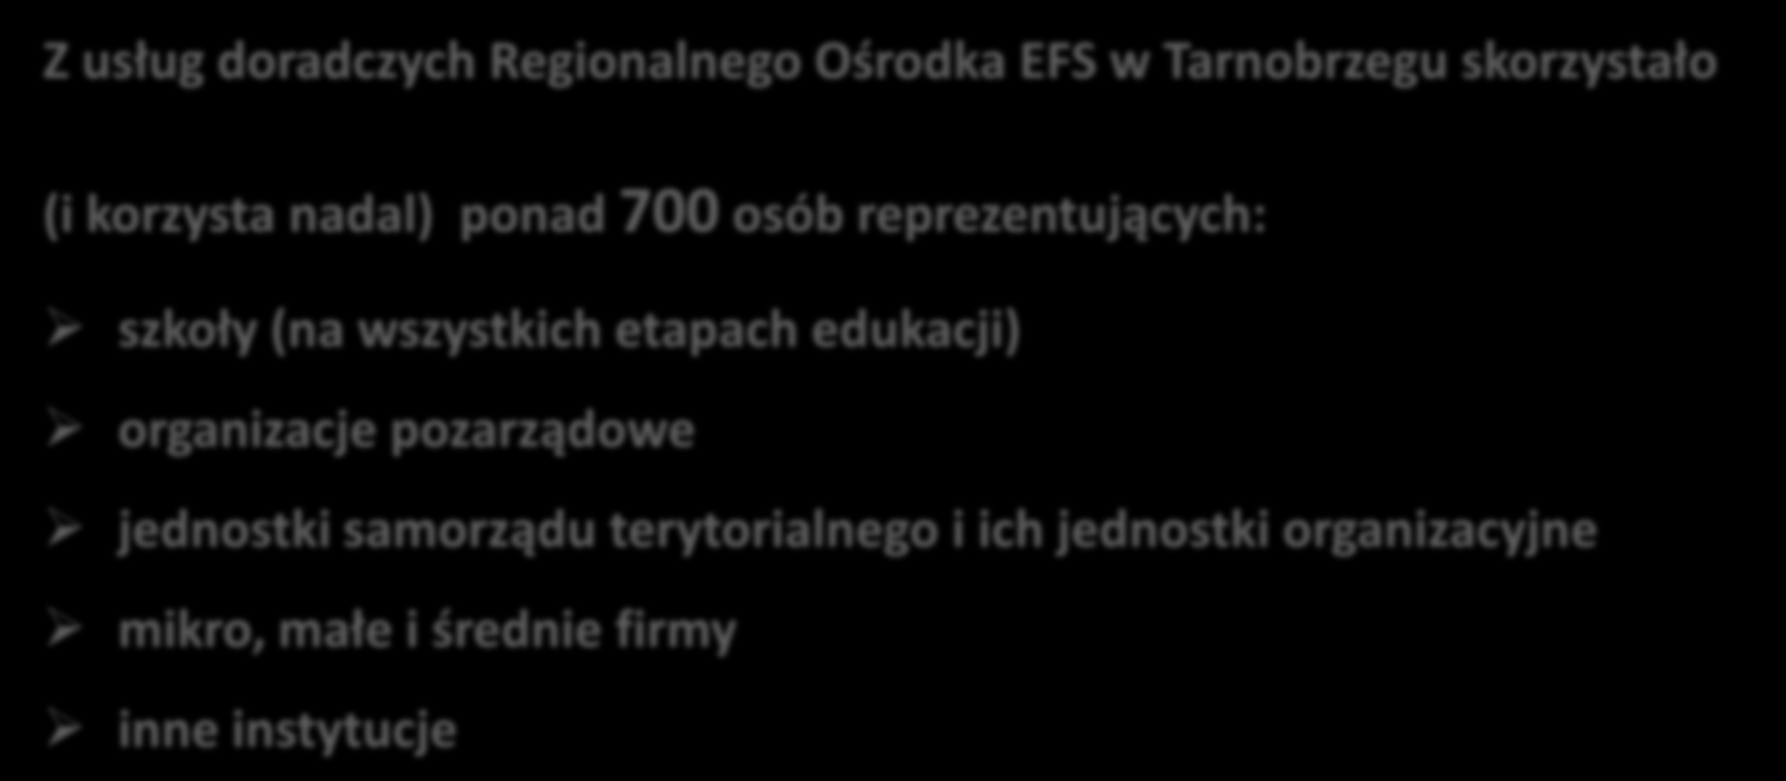 Doradztwo w ROEFS lata 2009-2014 Z usług doradczych Regionalnego Ośrodka EFS w Tarnobrzegu skorzystało (i korzysta nadal) ponad 700 osób reprezentujących: szkoły